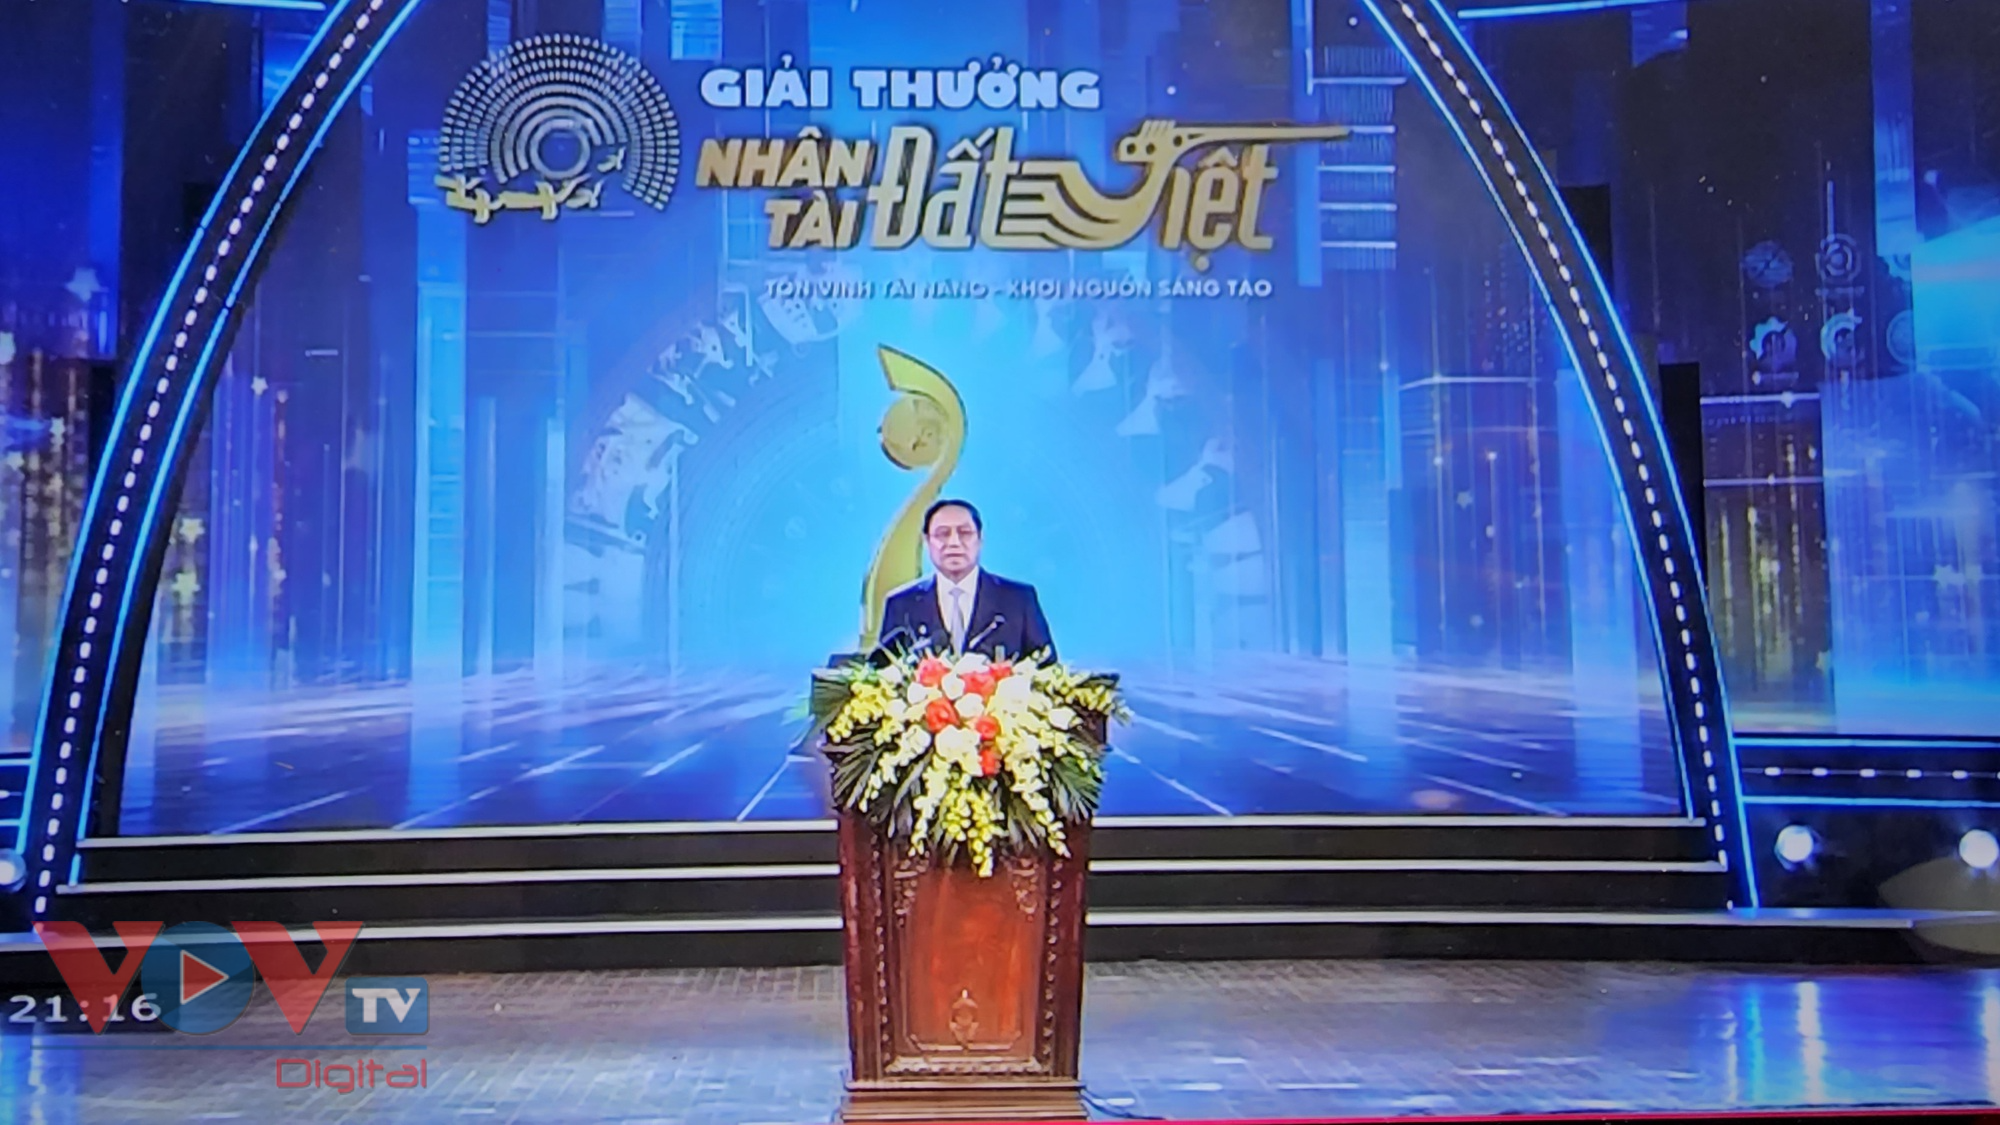 Thủ tướng Phạm Minh Chính dự lễ trao giải thưởng “Nhân tài Đất Việt” lần thứ 17- Ảnh 2.